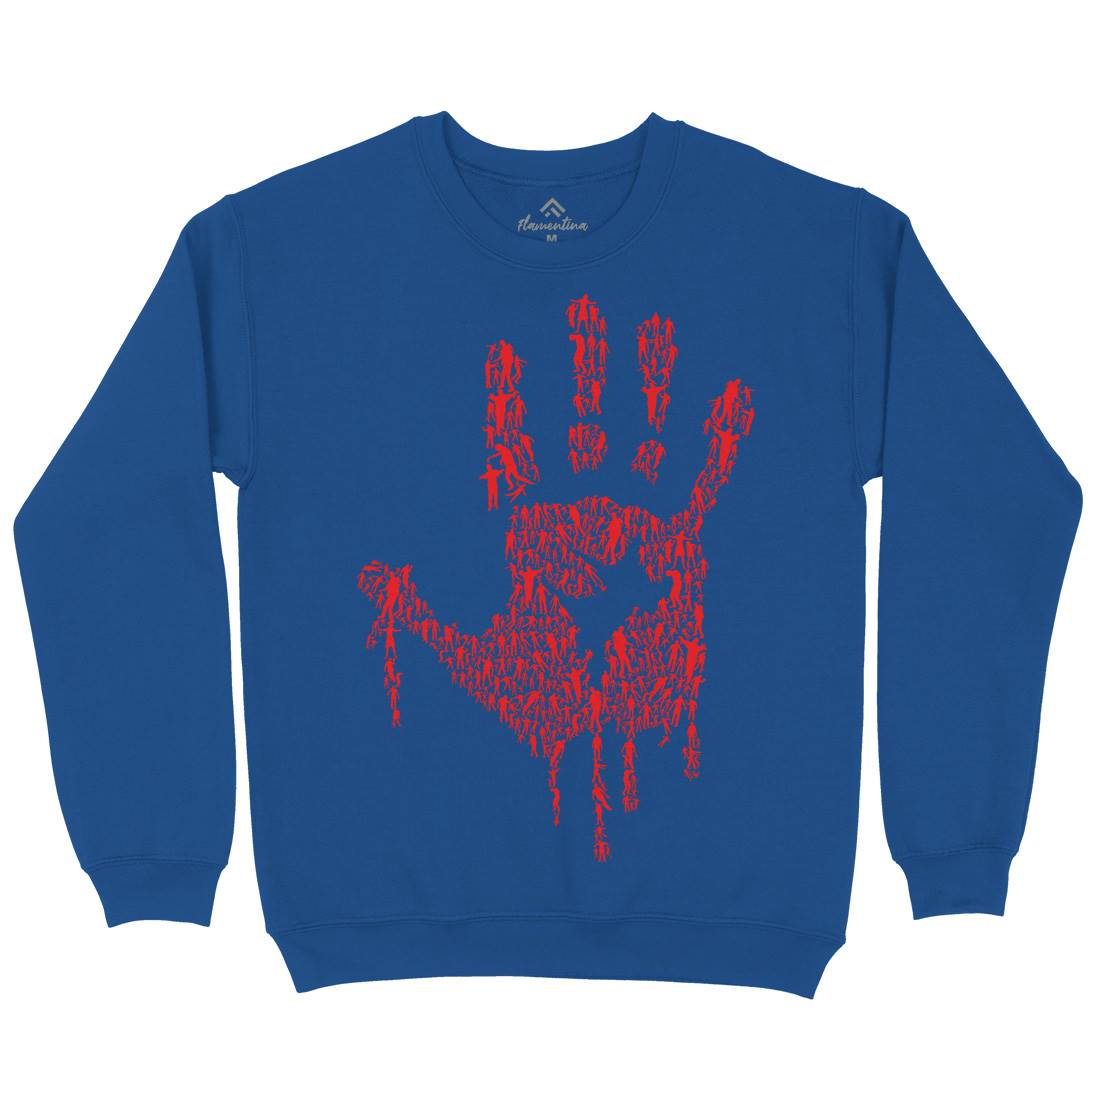 Hand Of Zombies Kids Crew Neck Sweatshirt Horror B049